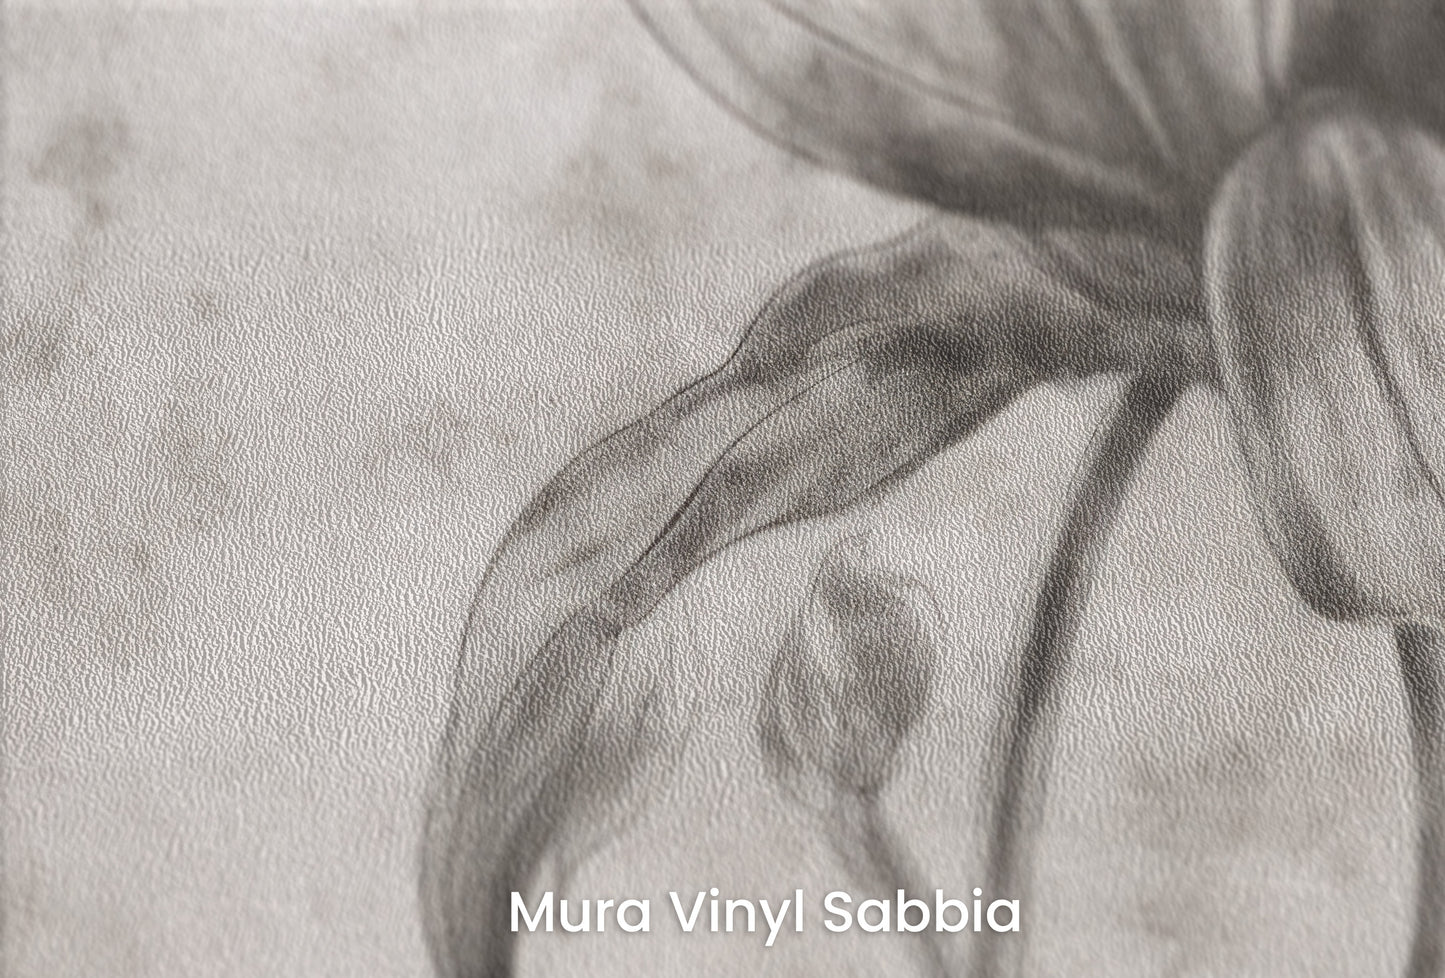 Zbliżenie na artystyczną fototapetę o nazwie TIMELESS BLOOM na podłożu Mura Vinyl Sabbia struktura grubego ziarna piasku.